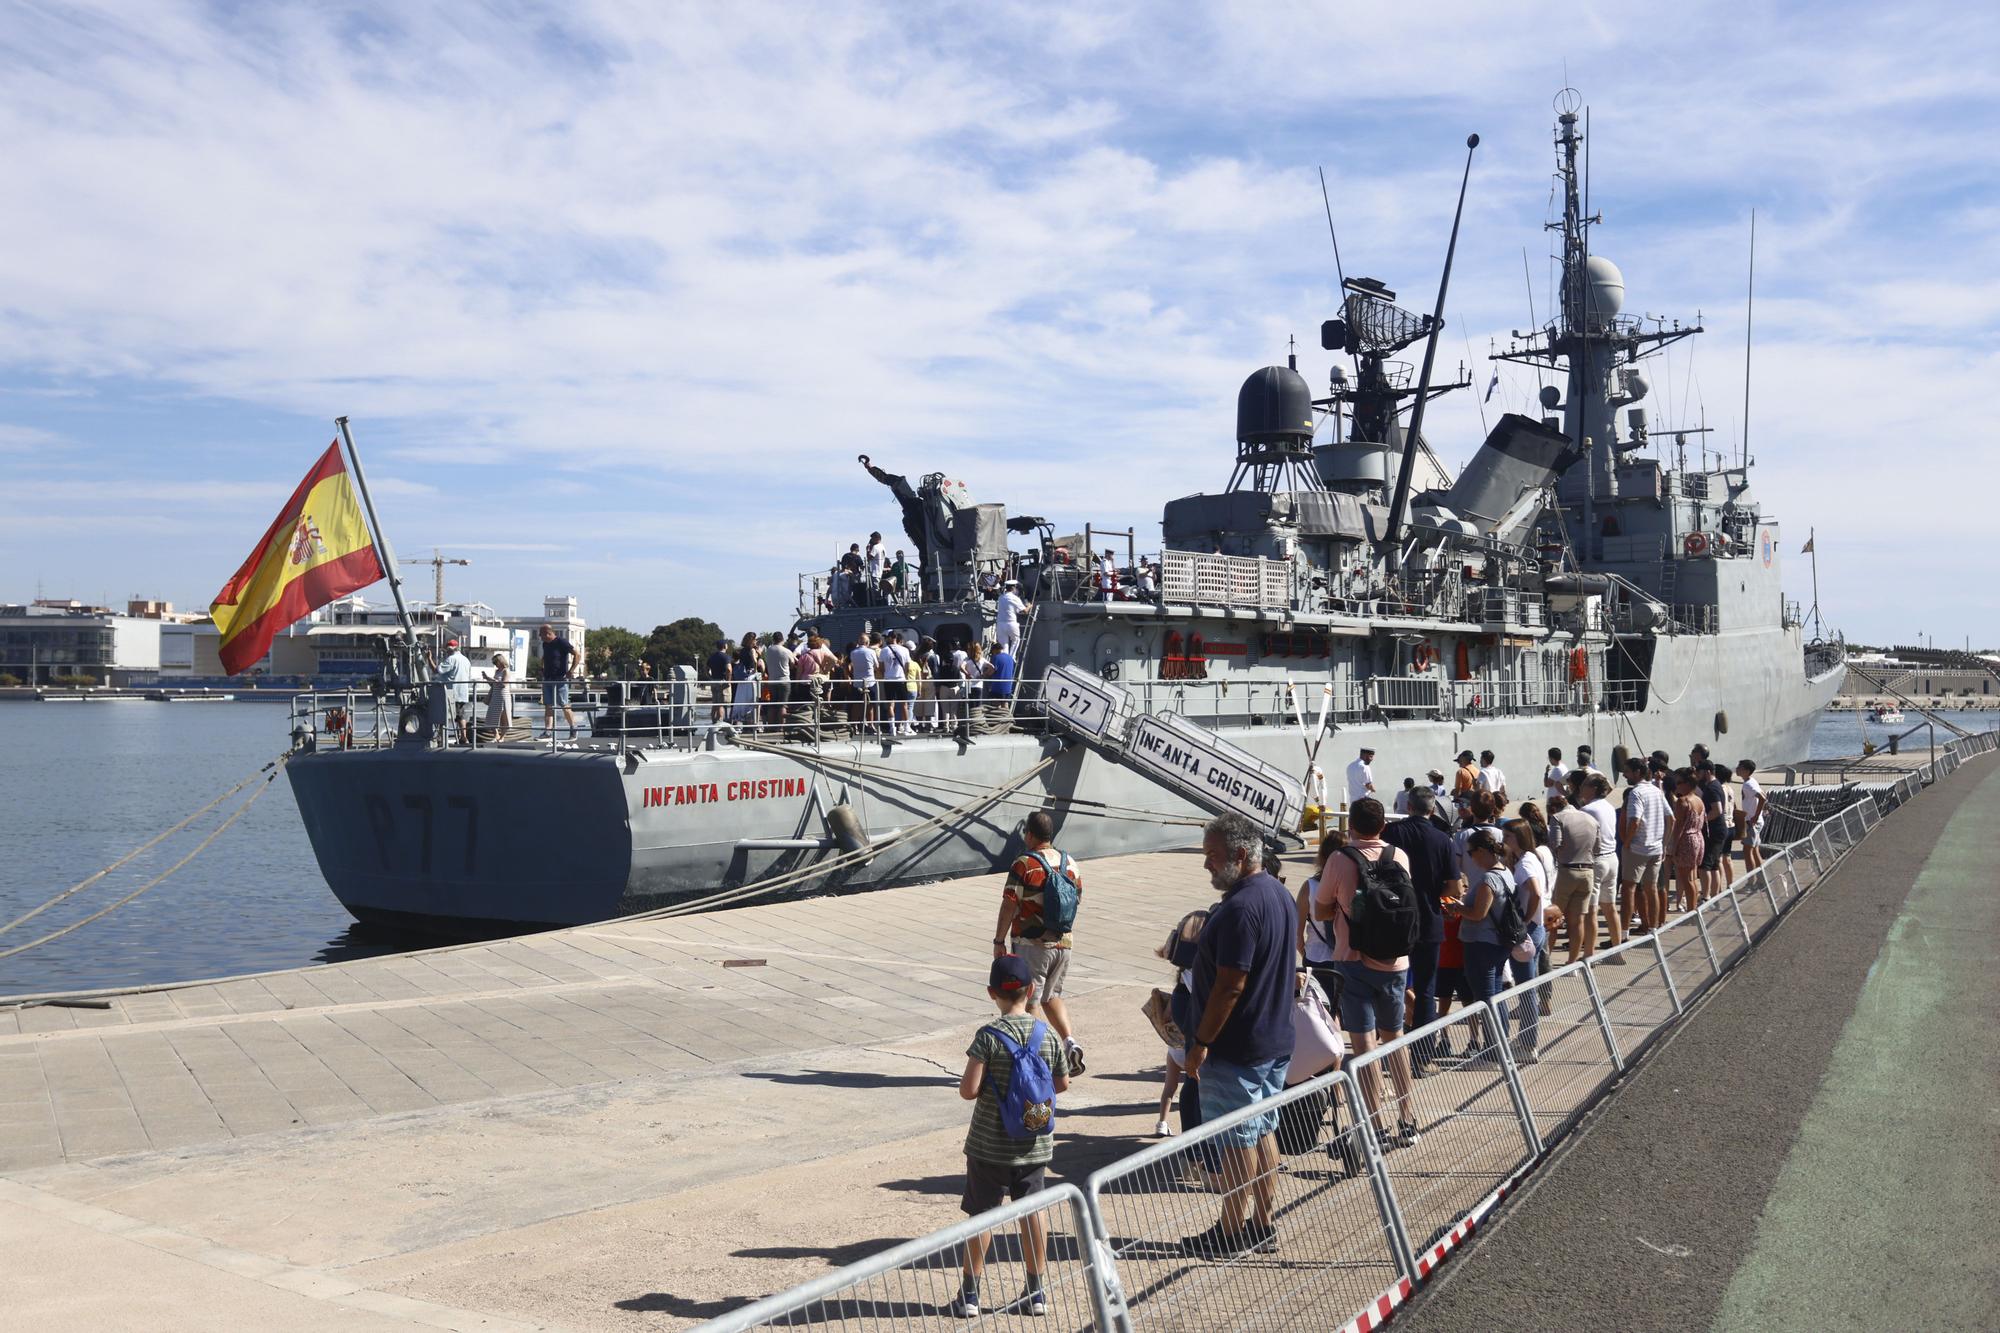 El Patrullero "Infanta Cristina" se puede visitar este fin de semana en València